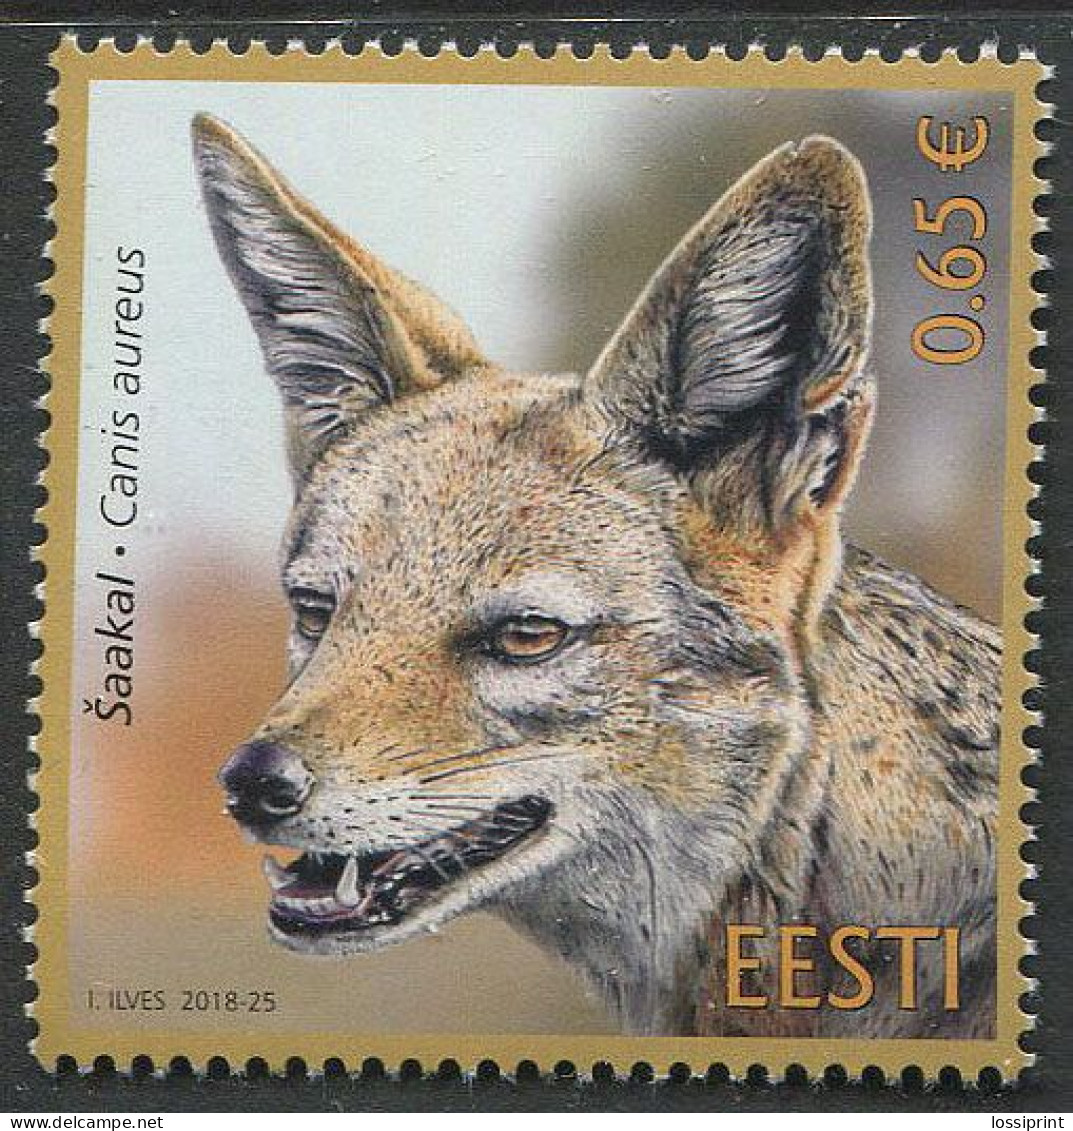 Estonia:Unused Stamp Animal, Jackal, Canis Aureus, 2018, MNH - Estland